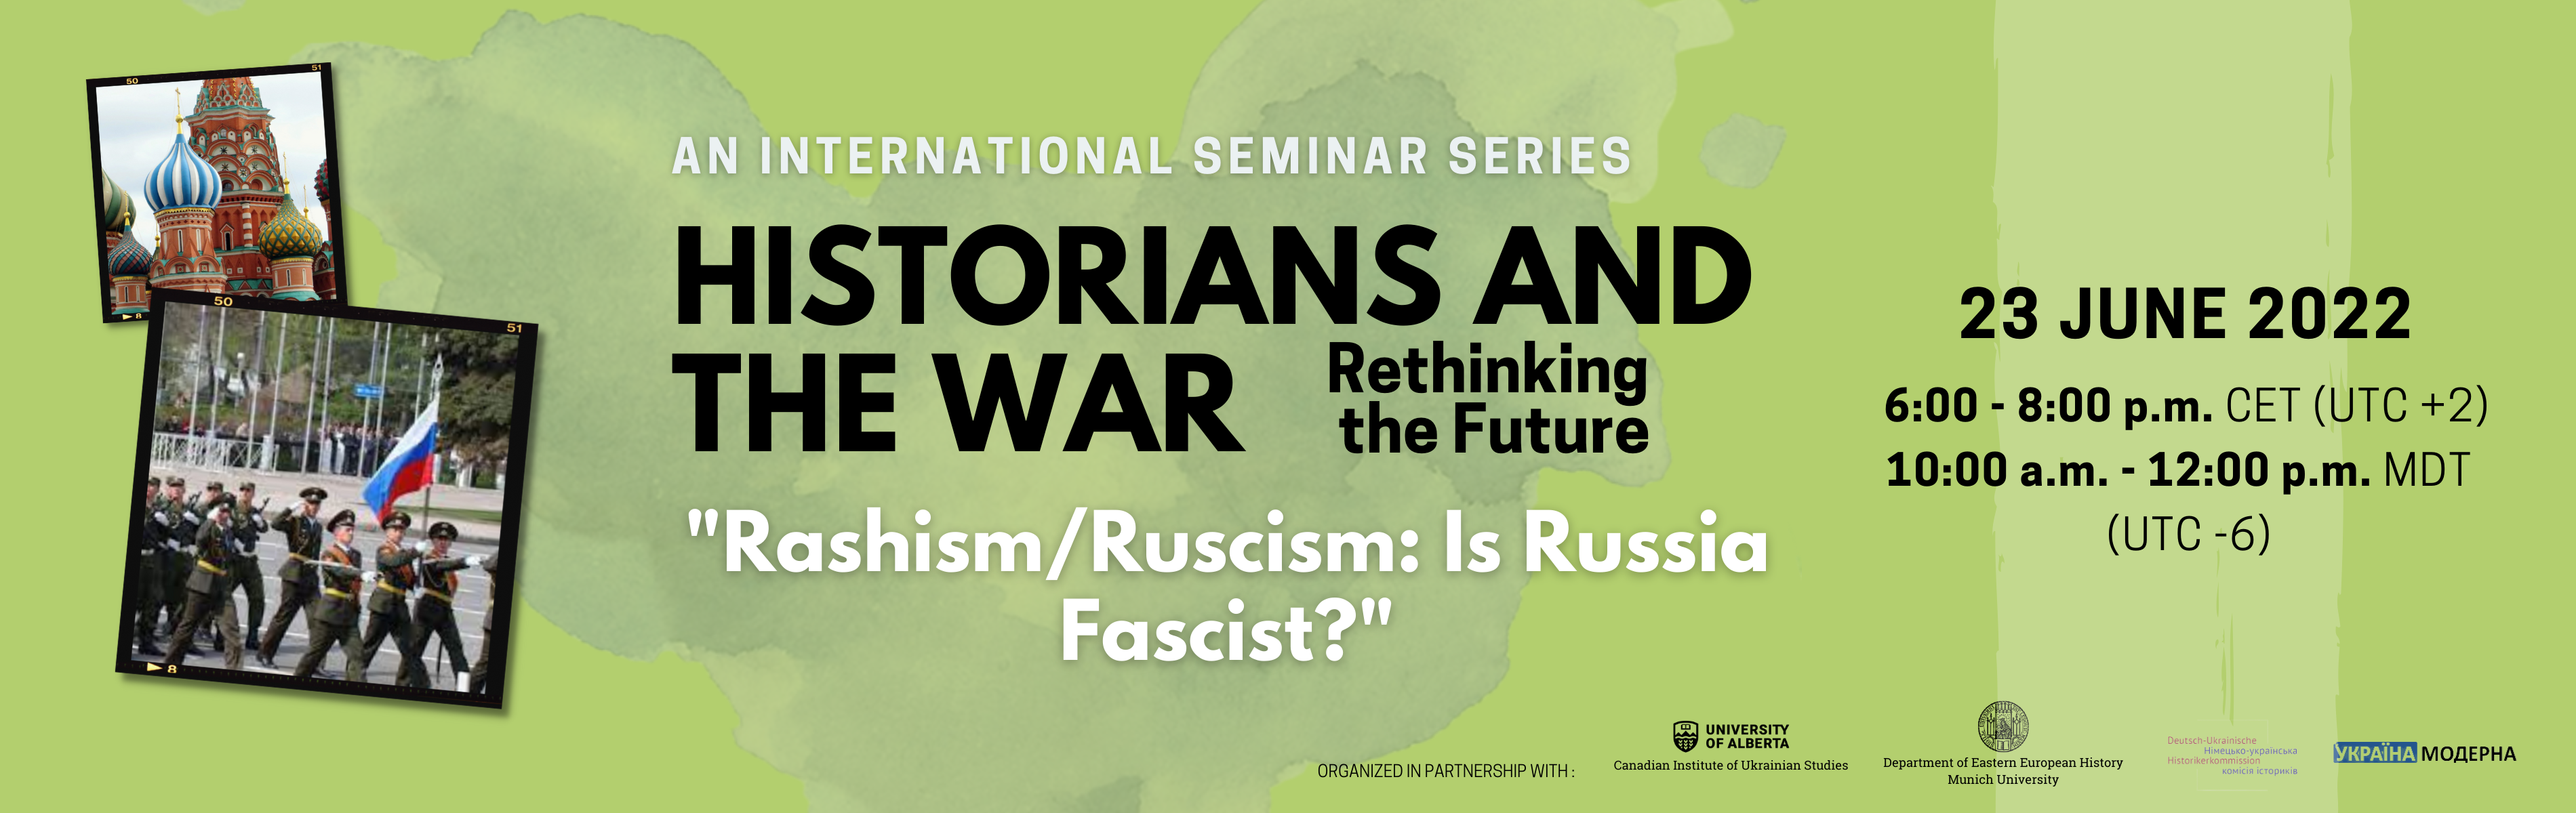 final-copy-of-historians-and-war-seminar_rashism.png